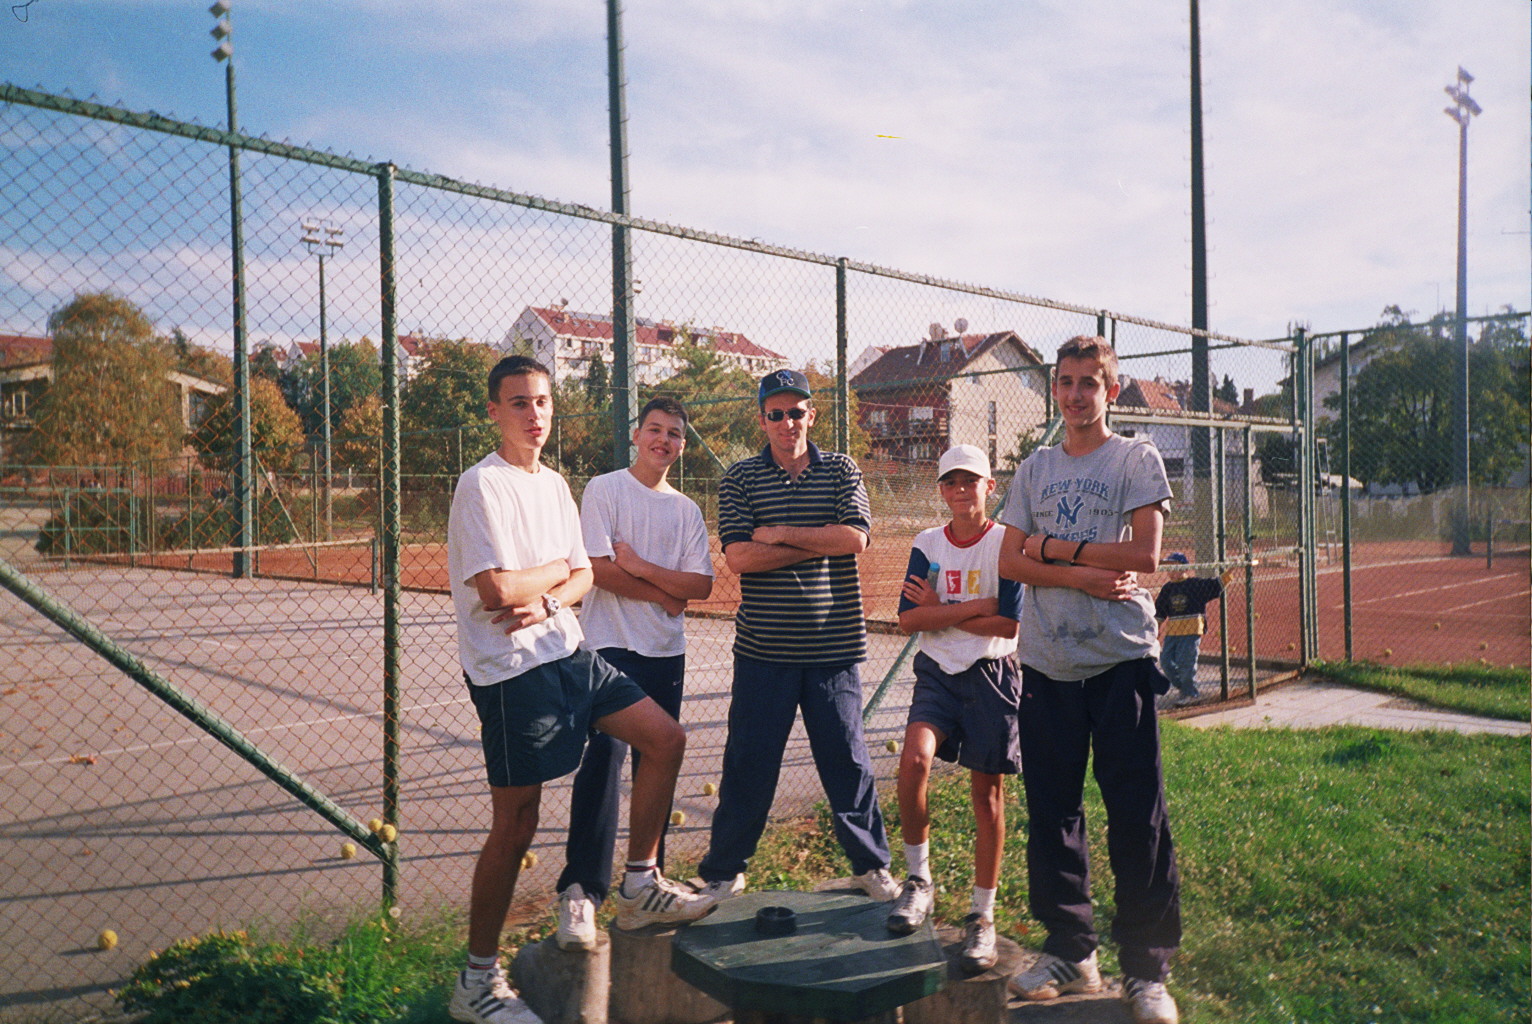 Tenis Trener Beograd